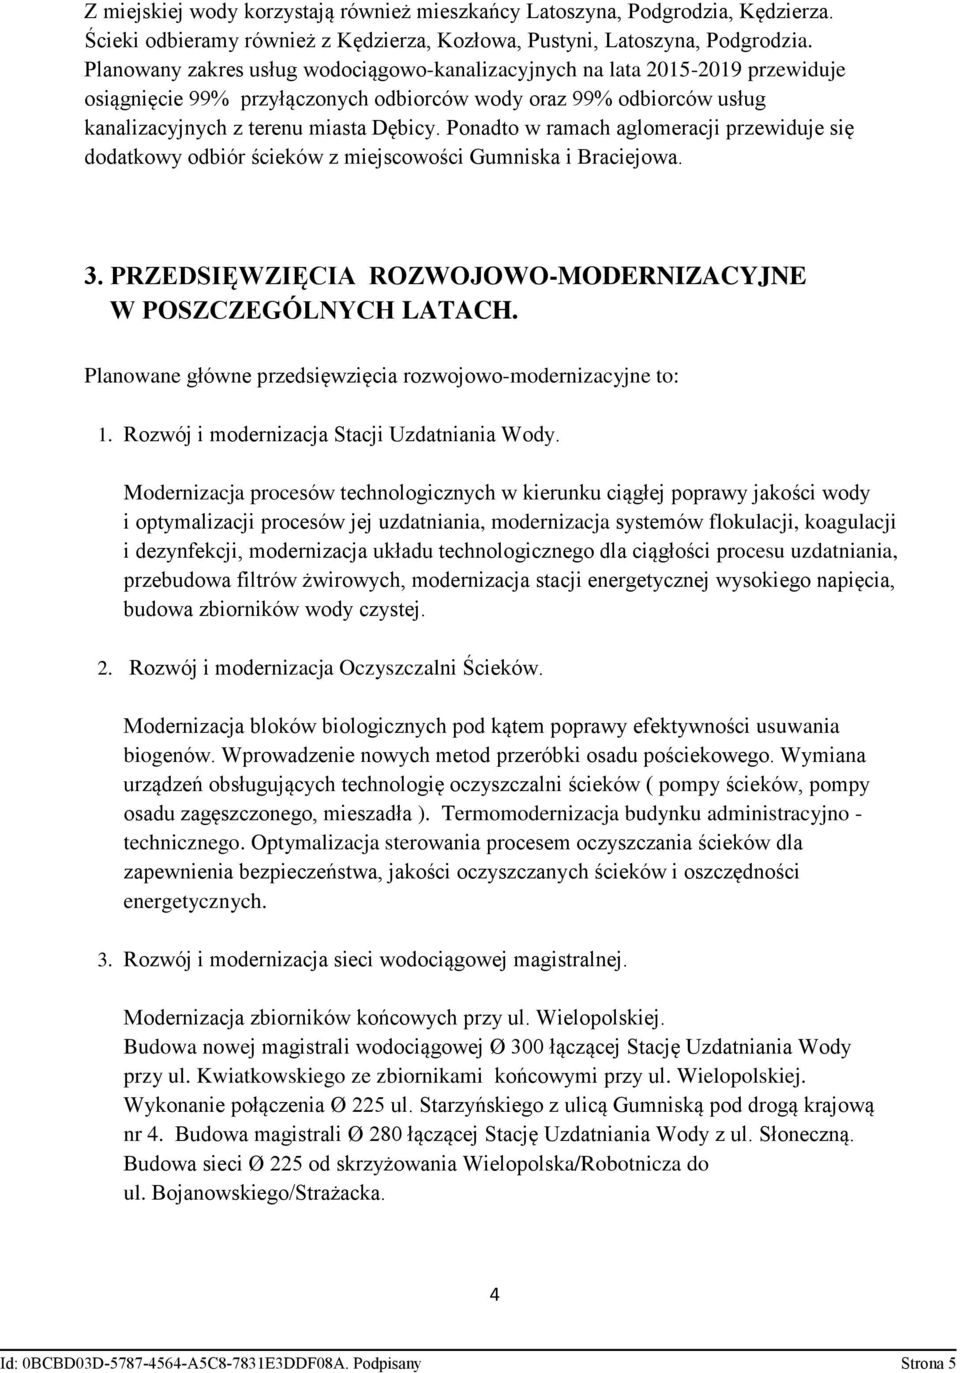 Ponadto w ramach aglomeracji przewiduje się dodatkowy odbiór ścieków z miejscowości Gumniska i Braciejowa. 3. PRZEDSIĘWZIĘCIA ROZWOJOWO-MODERNIZACYJNE W POSZCZEGÓLNYCH LATACH.